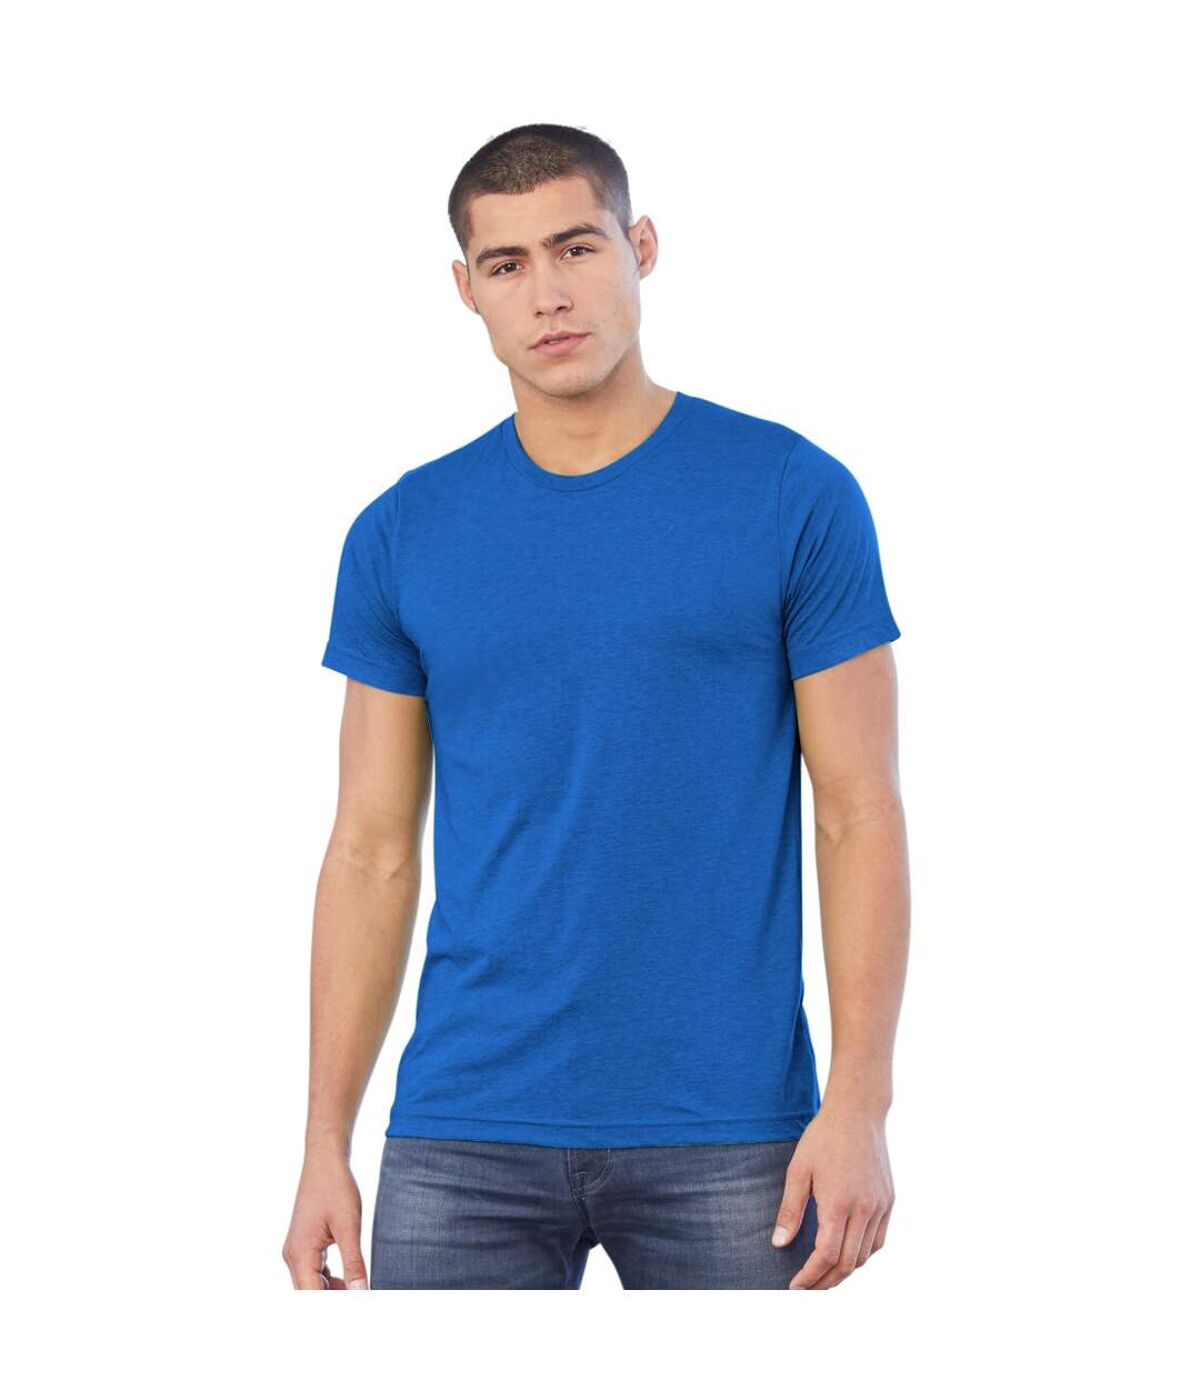 Canvas Triblend - T-shirt à manches courtes - Homme (Triblend blanc solide) - UTBC168